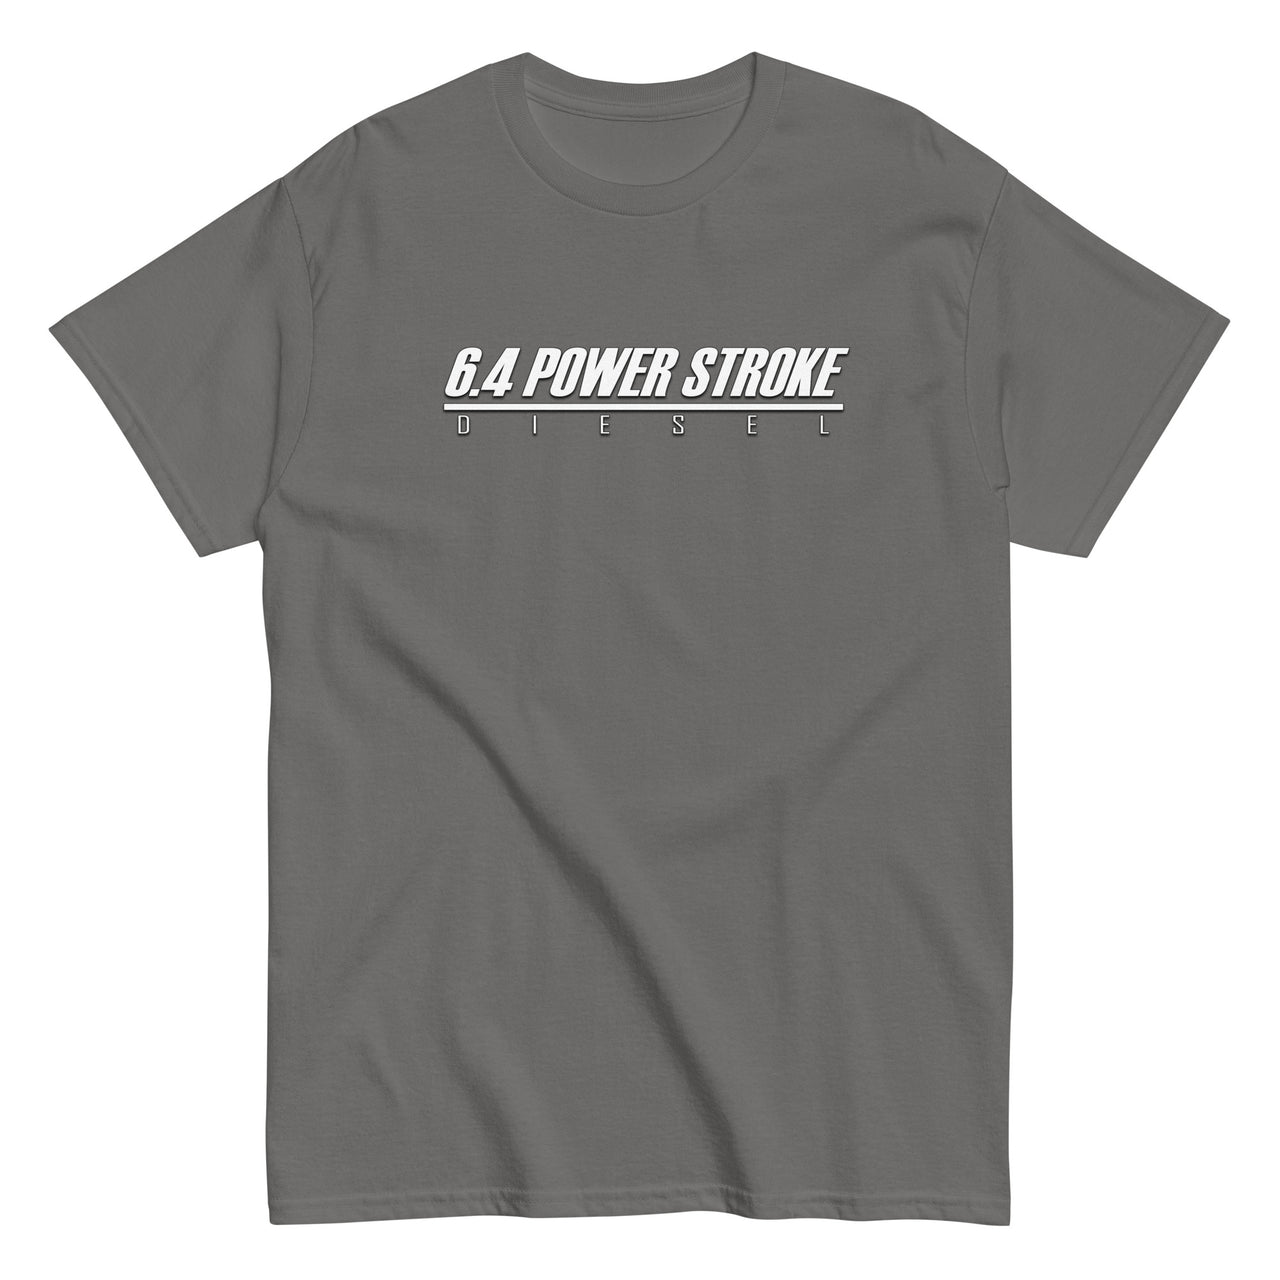 6.4 Power Stroke Trucks t-shirt in grey